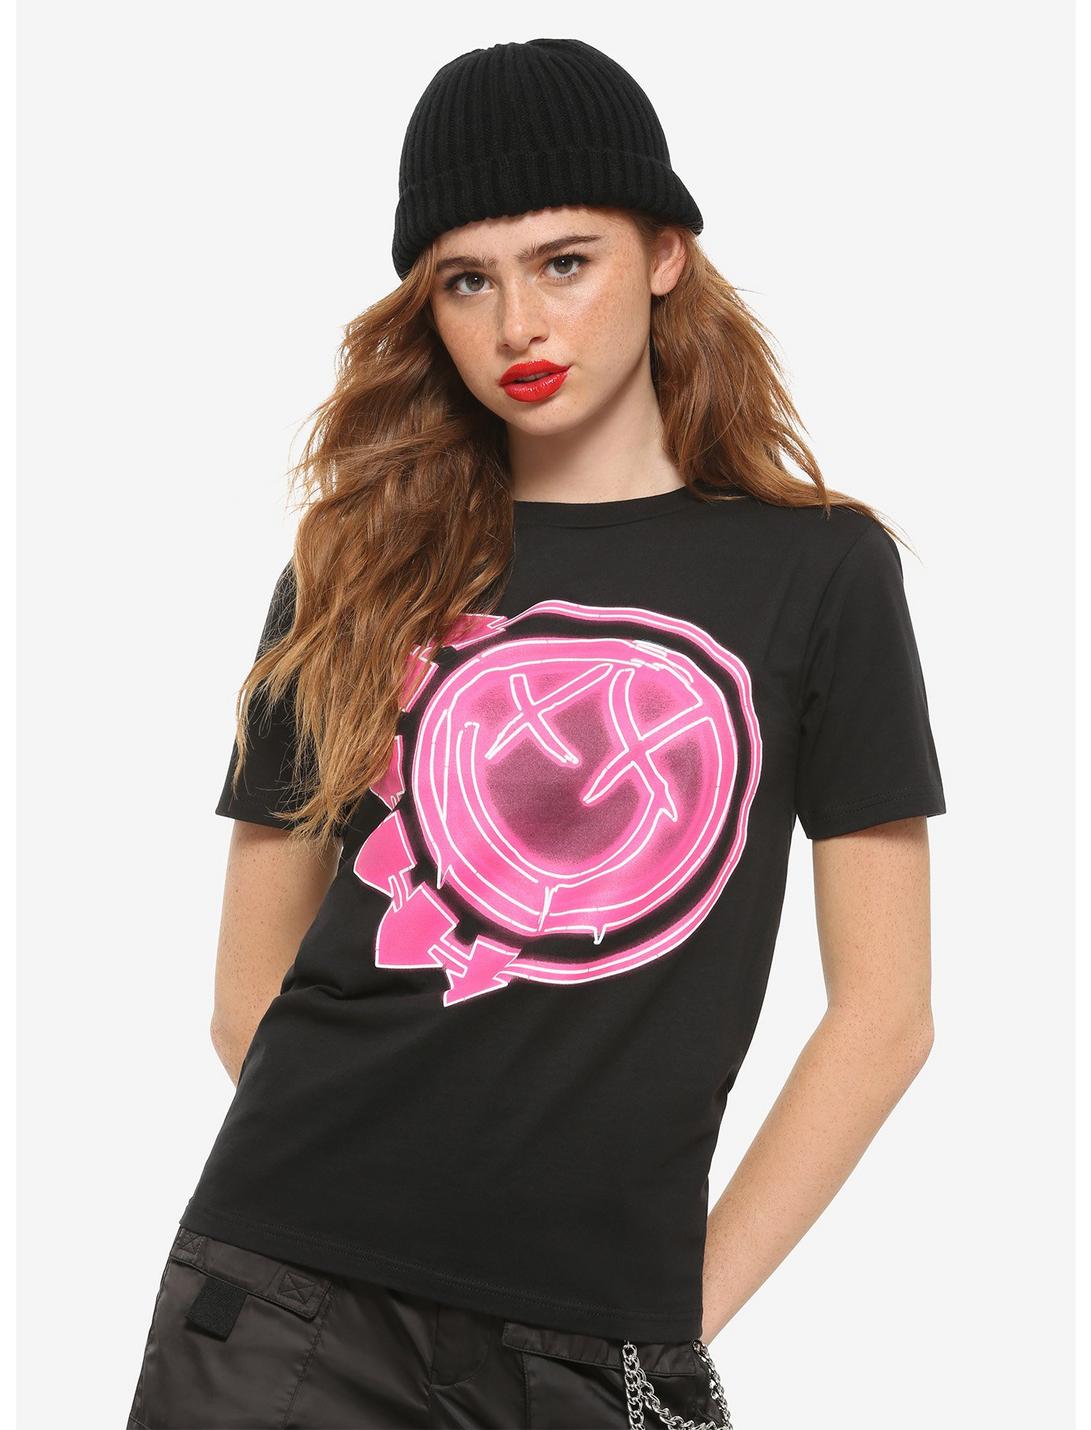 Blink-182 Neon Pink Logo Girls T-Shirt, BLACK, hi-res